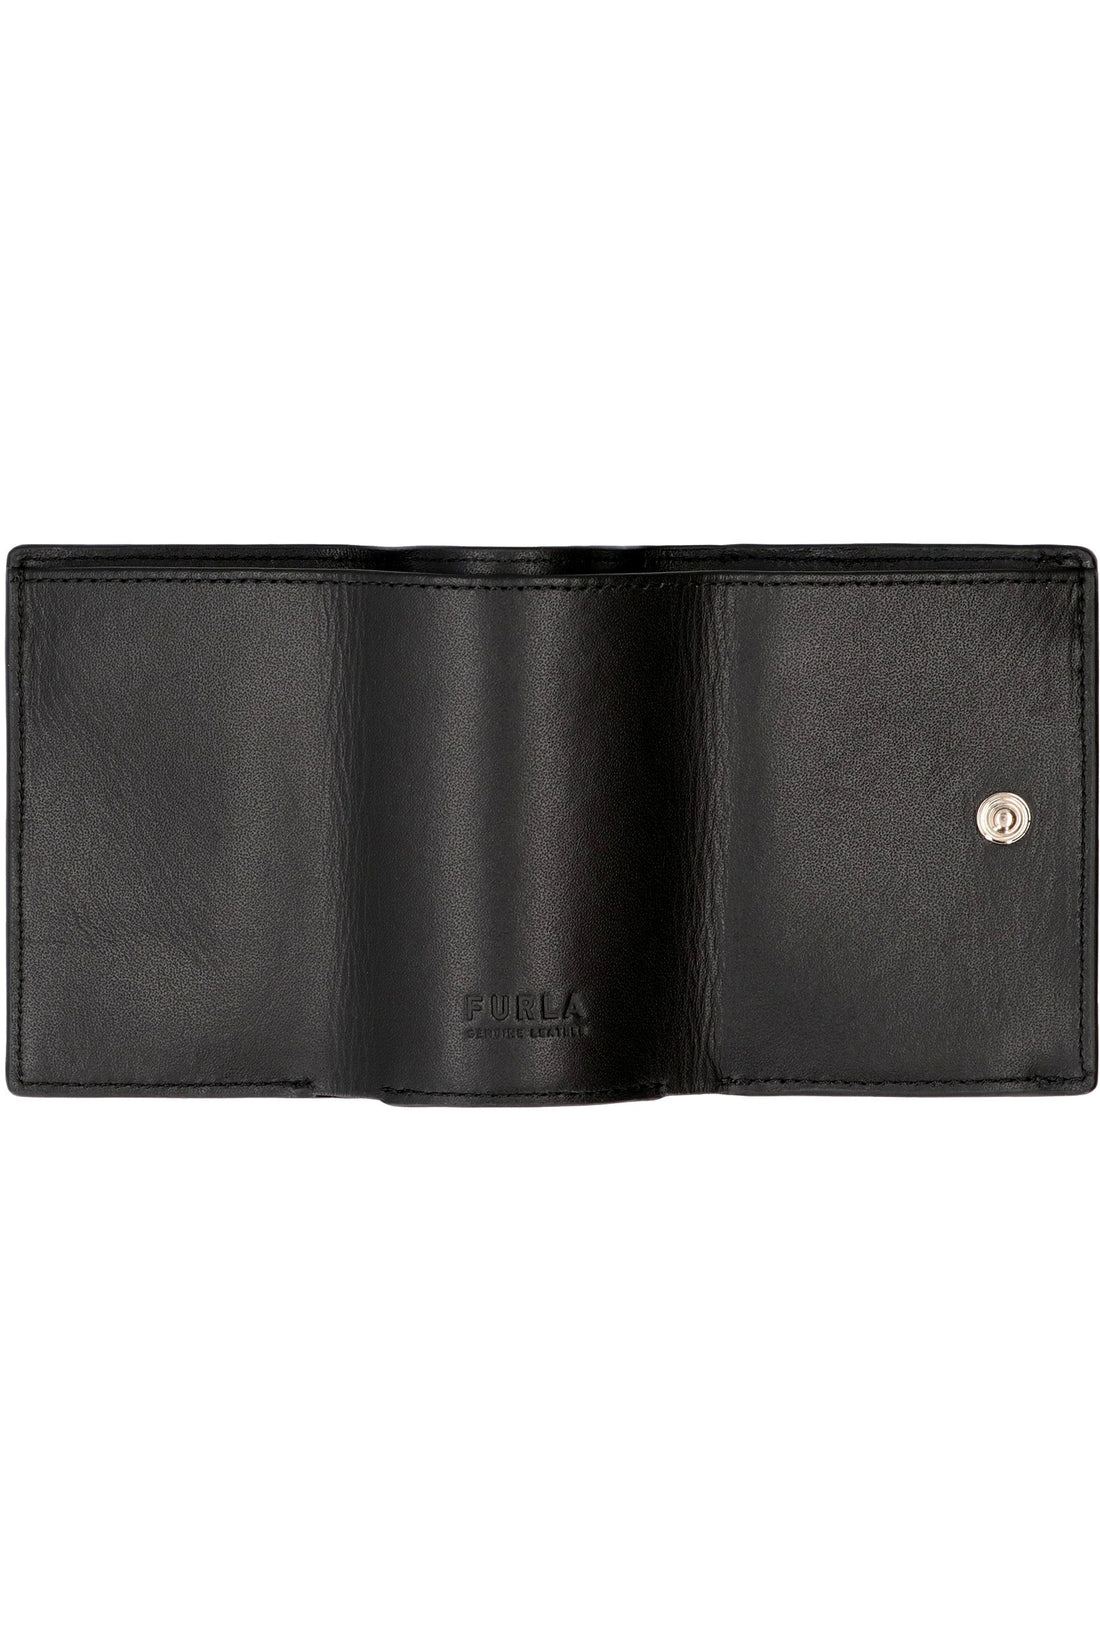 Furla-OUTLET-SALE-Leather wallet-ARCHIVIST